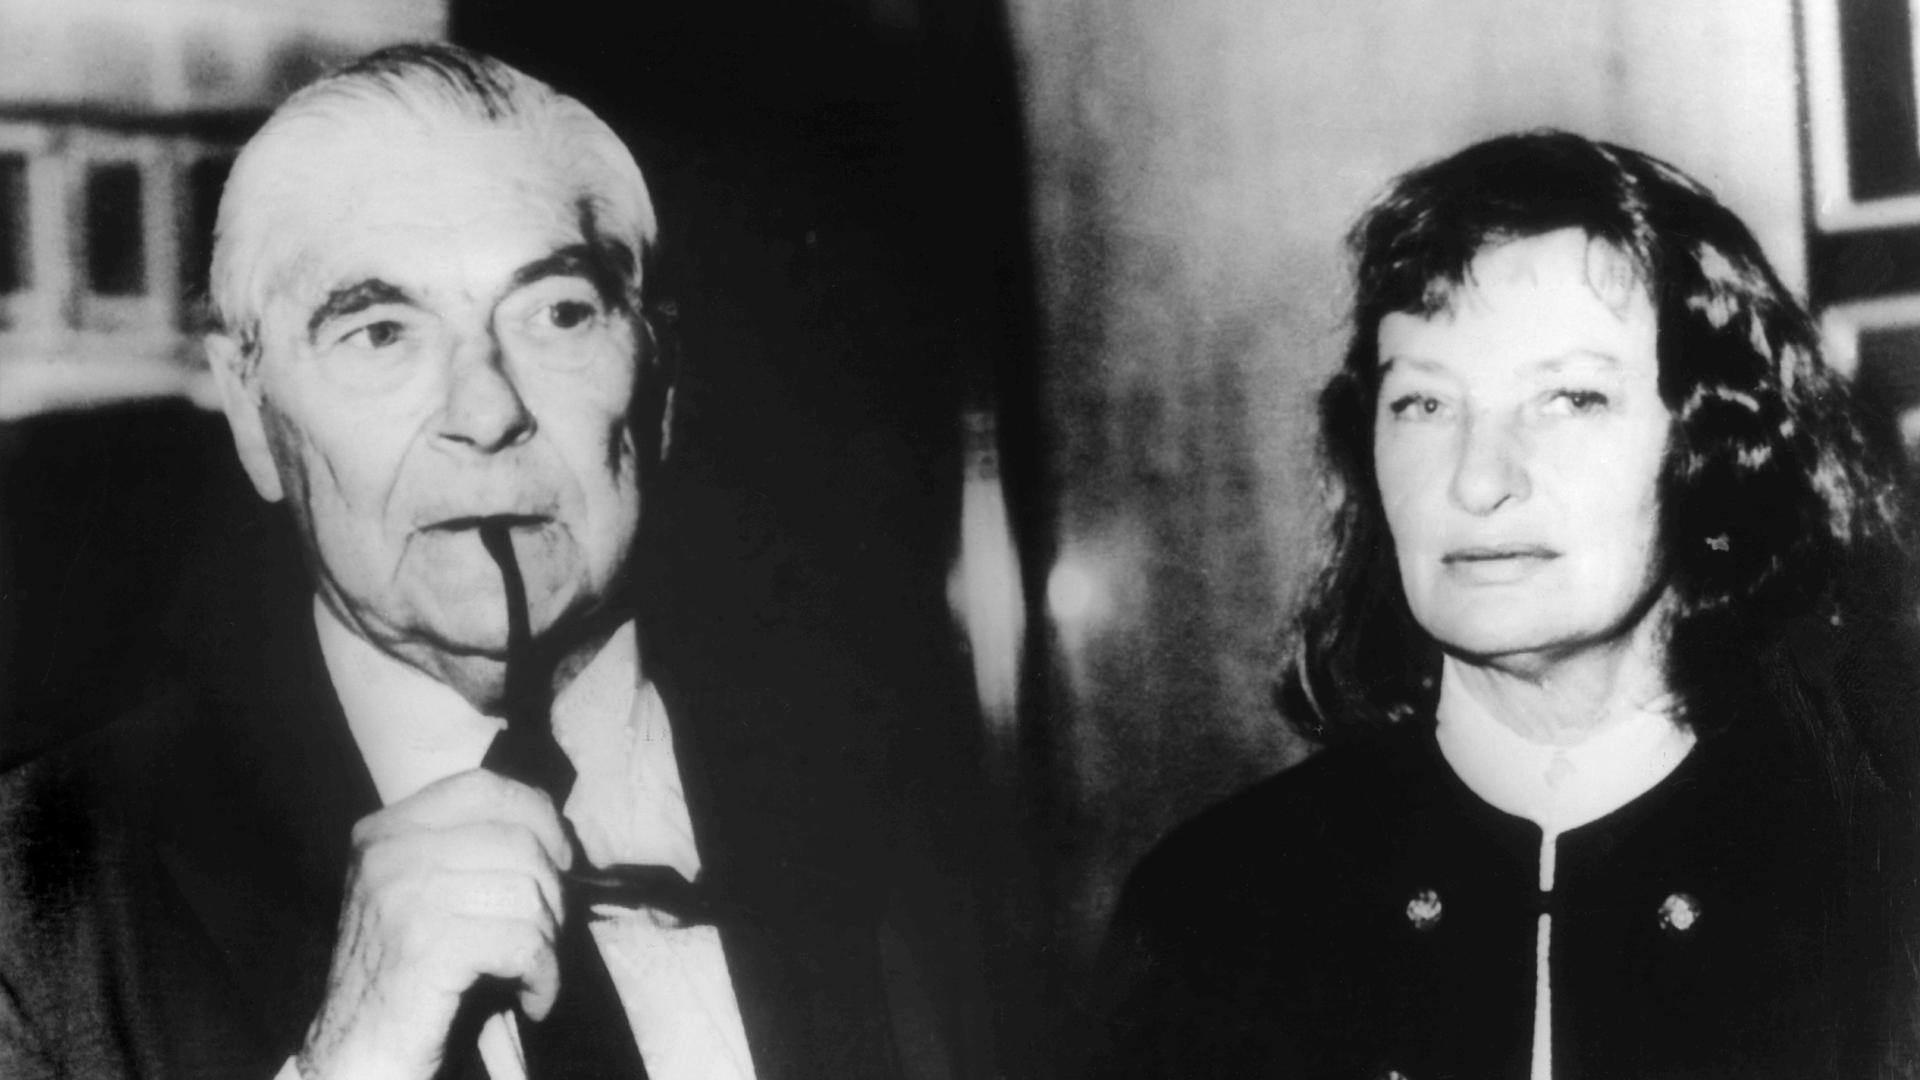 Schieden am 1. März 1983 gemeinsam durch Suizid aus dem Leben. Der Schriftsteller Arthur Koestler mit seiner Frau Cynthia in einer Aufnahme aus dem Jahr 1979. 